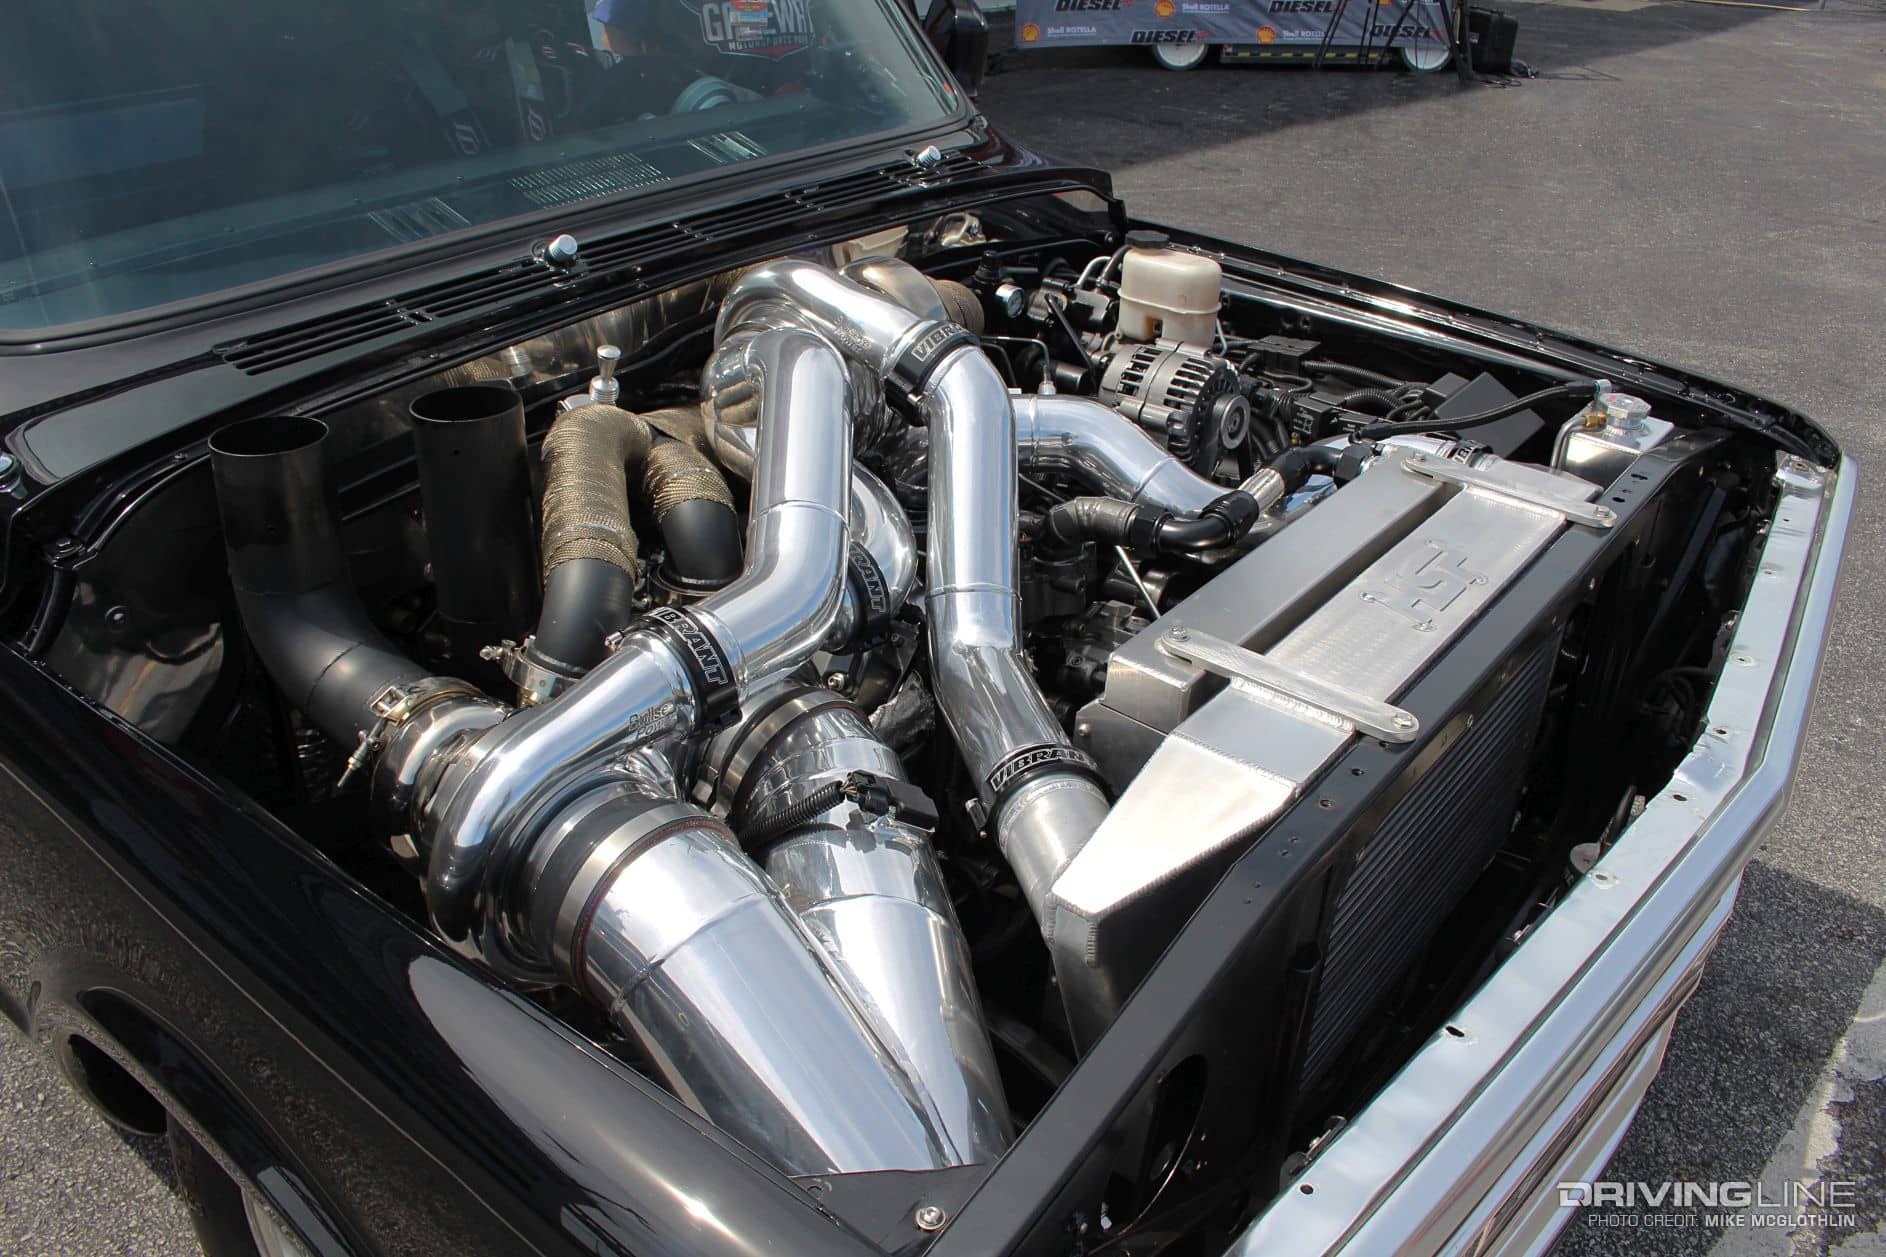 1969 Chevy C10 met een triple turbo Duramax in de motorruimte